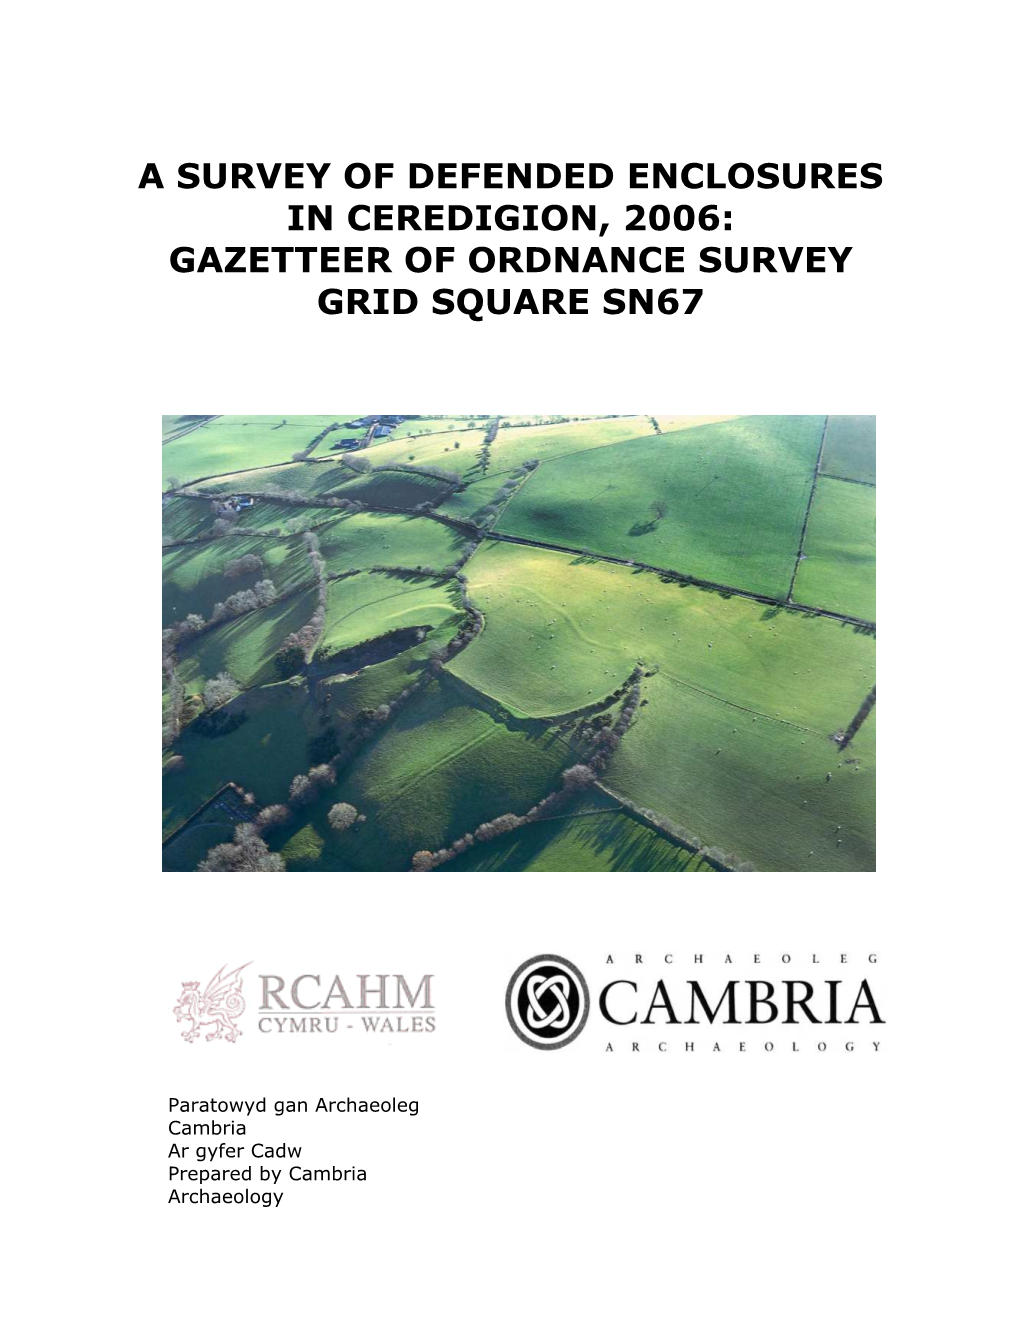 A Survey of Defended Enclosures in Ceredigion, 2006: Gazetteer of Ordnance Survey Grid Square Sn67